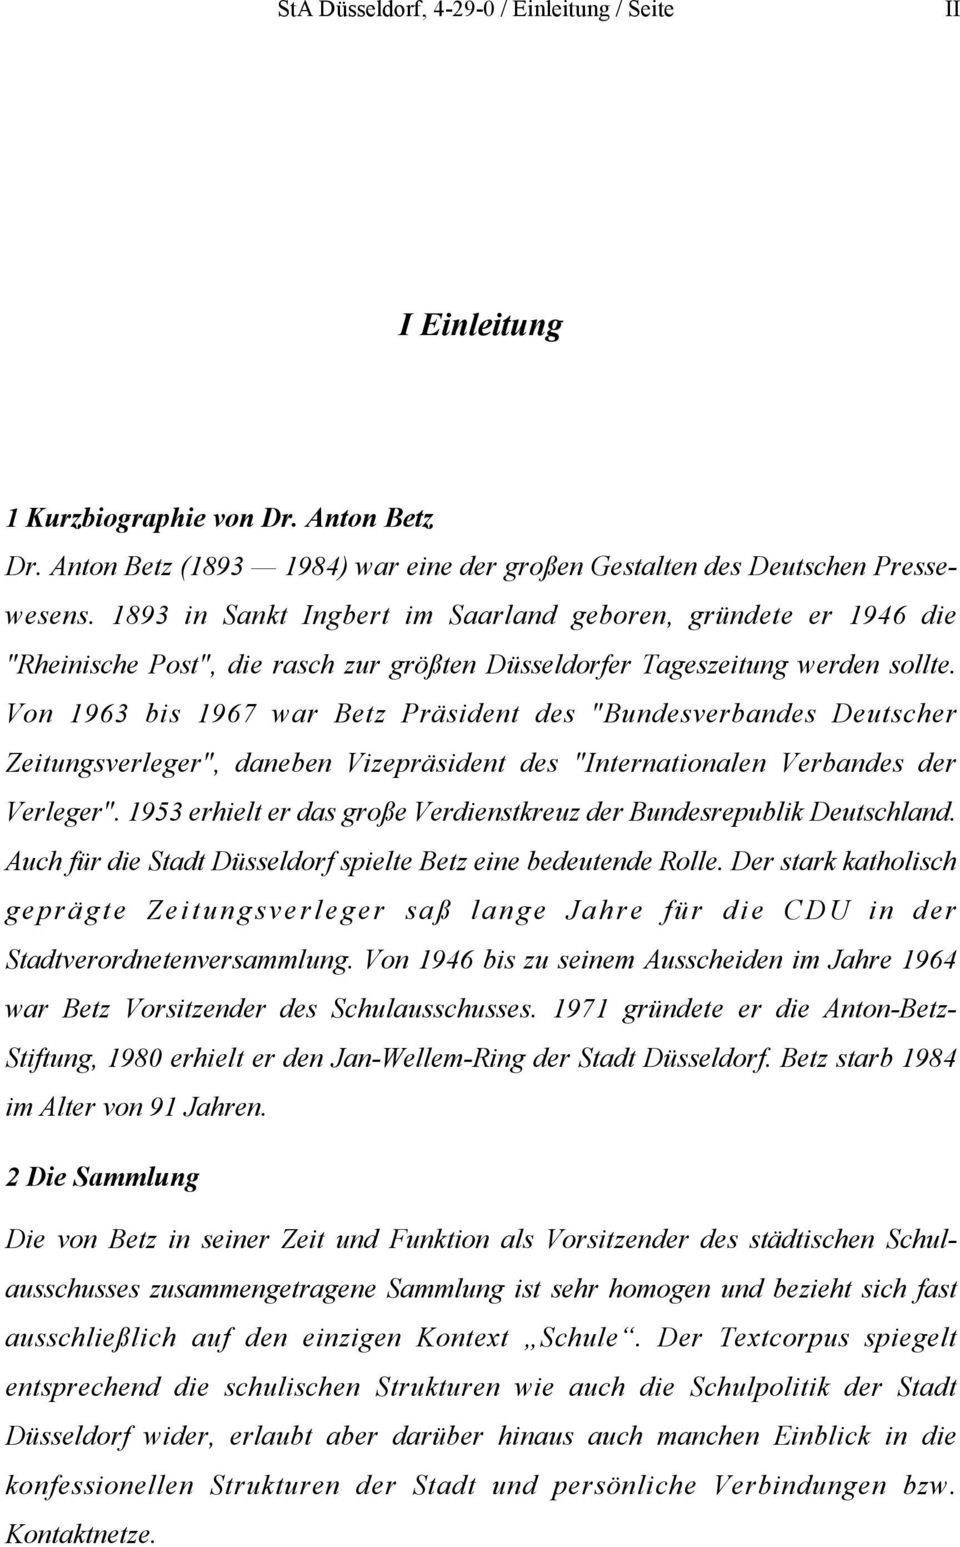 Von 1963 bis 1967 war Betz Präsident des "Bundesverbandes Deutscher Zeitungsverleger", daneben Vizepräsident des "Internationalen Verbandes der Verleger".